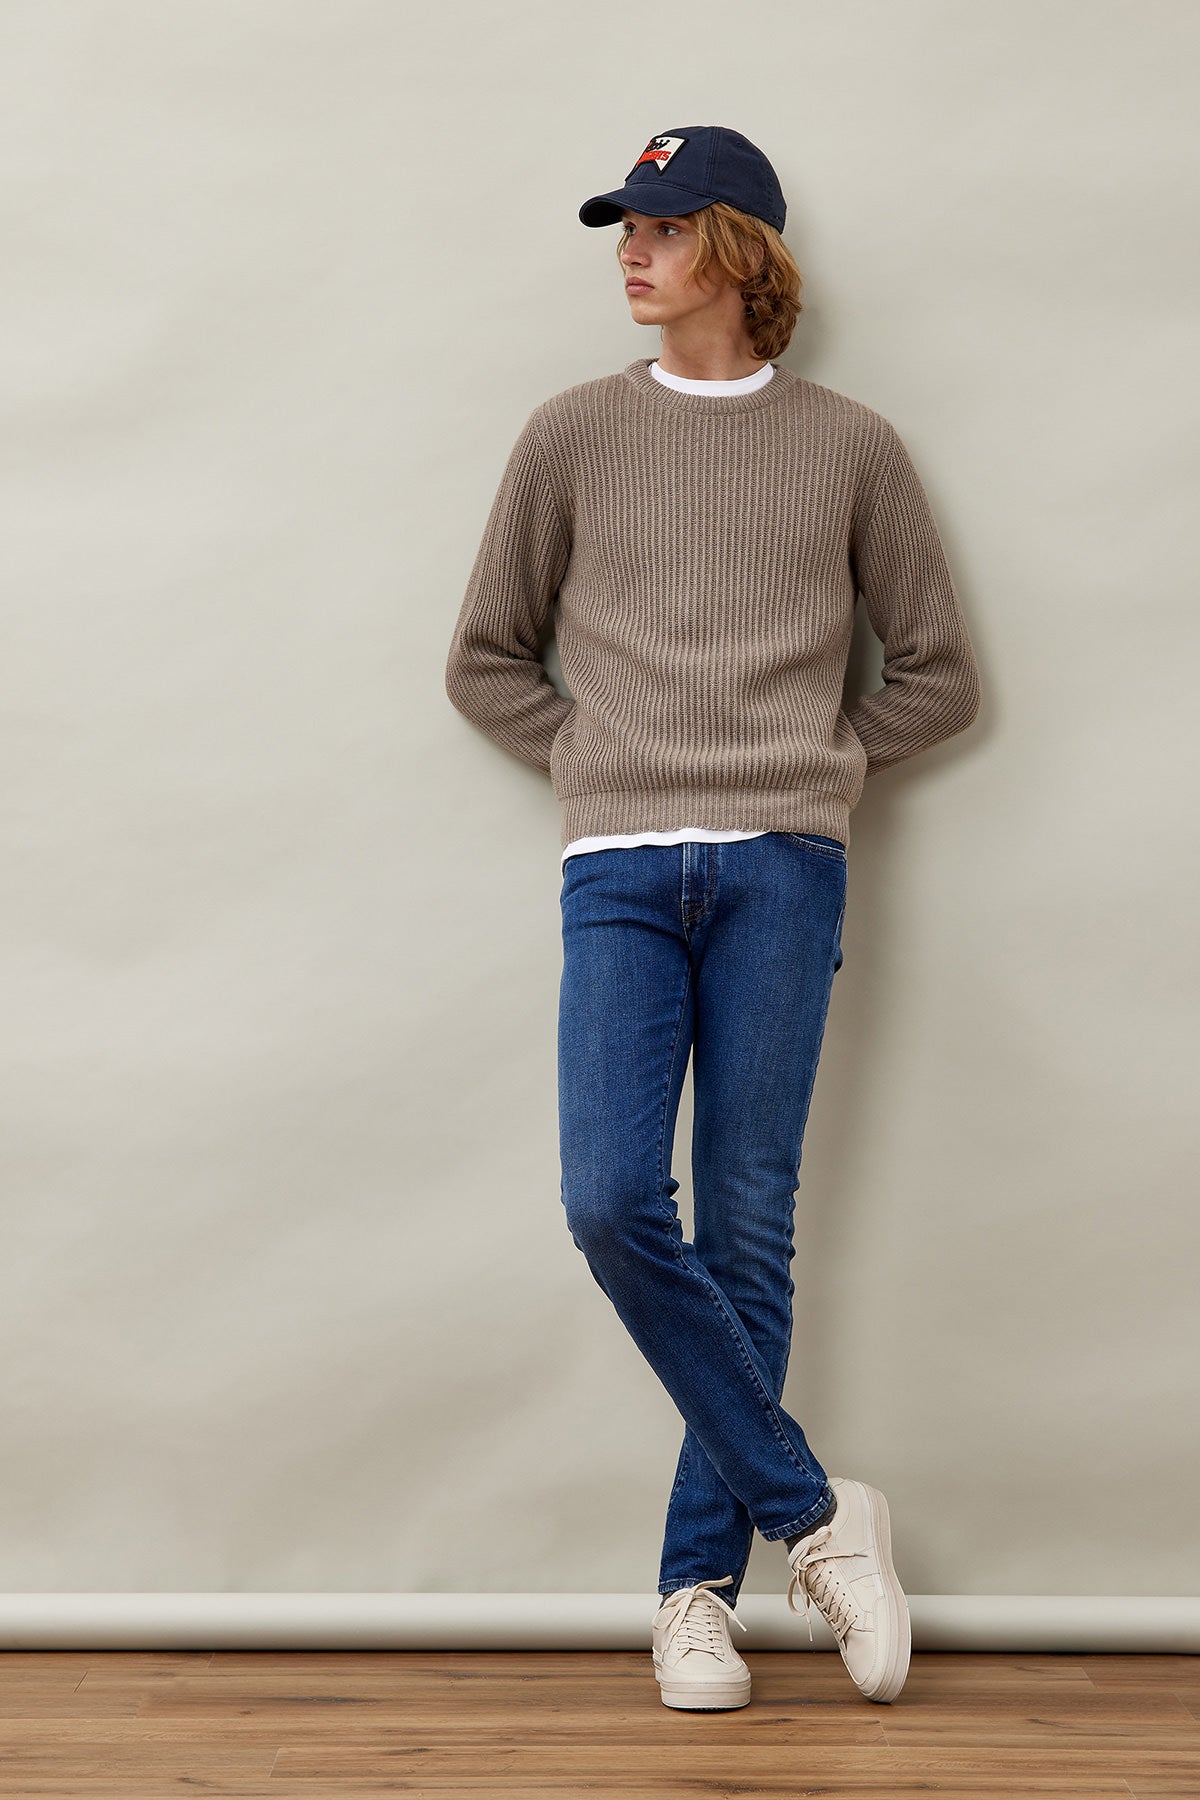 Jeans Roy Roger's Pueblo / Jeans - Ideal Moda